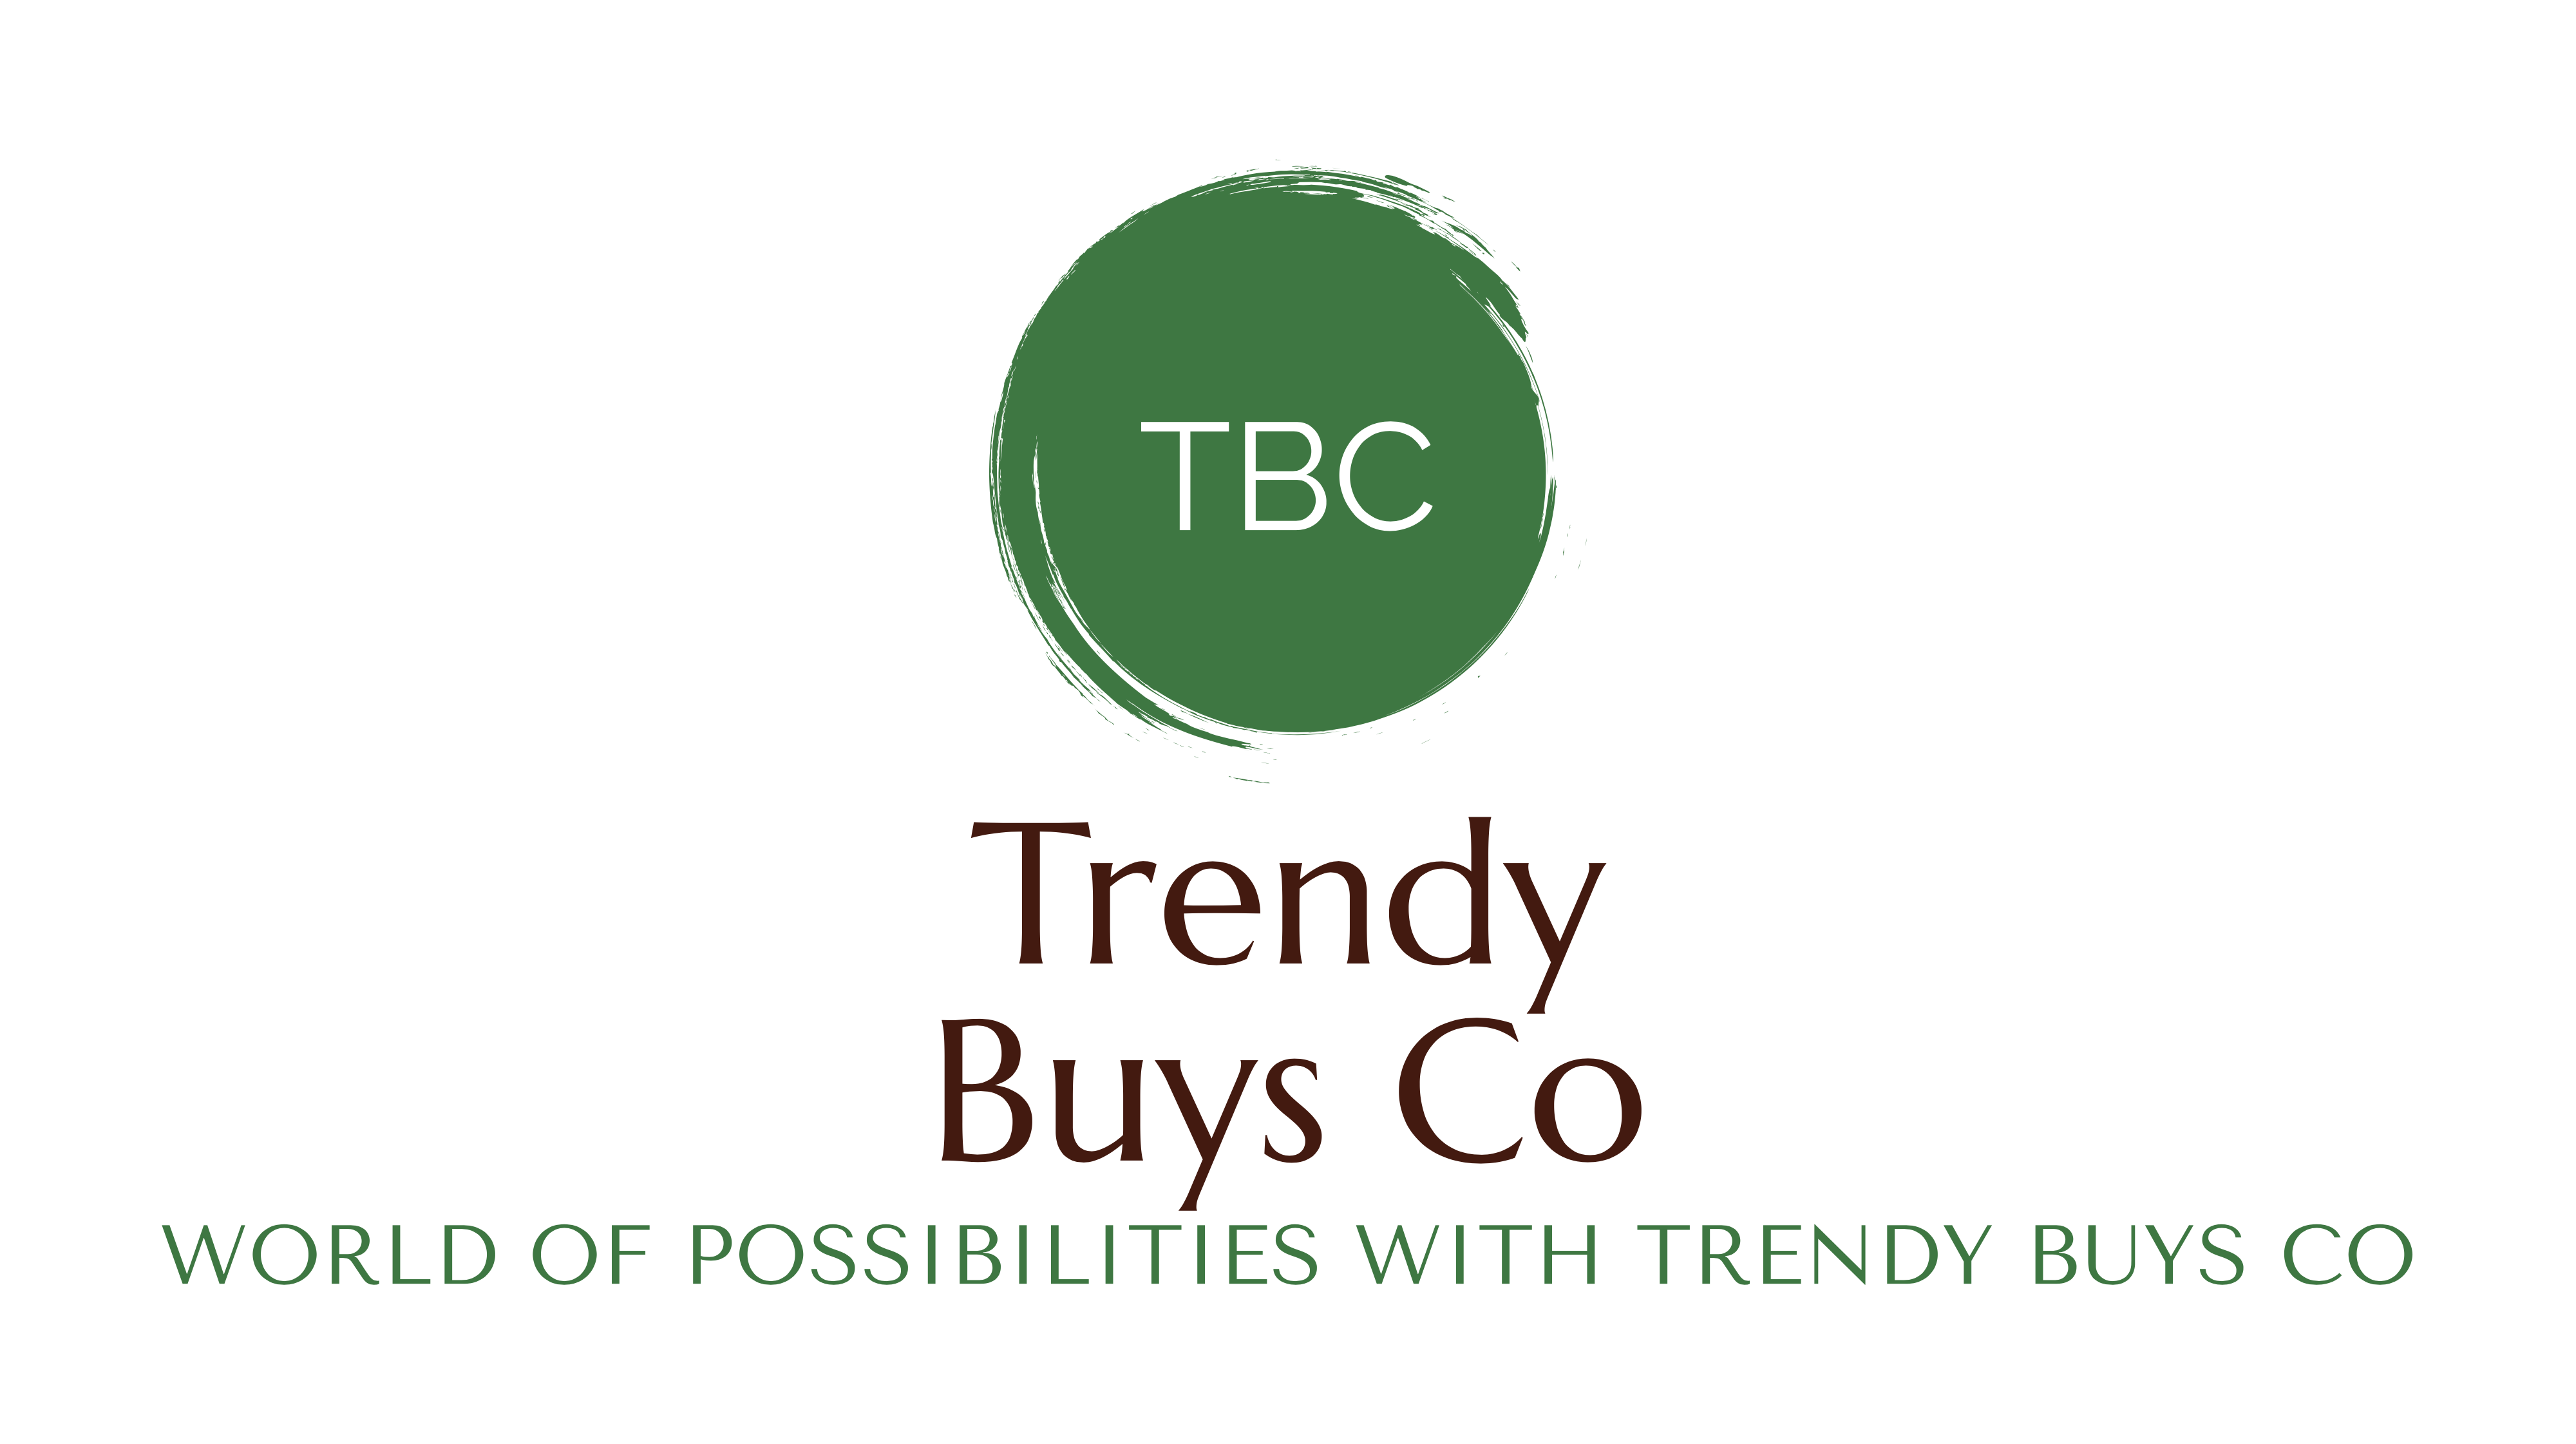 Trendy Buys Co